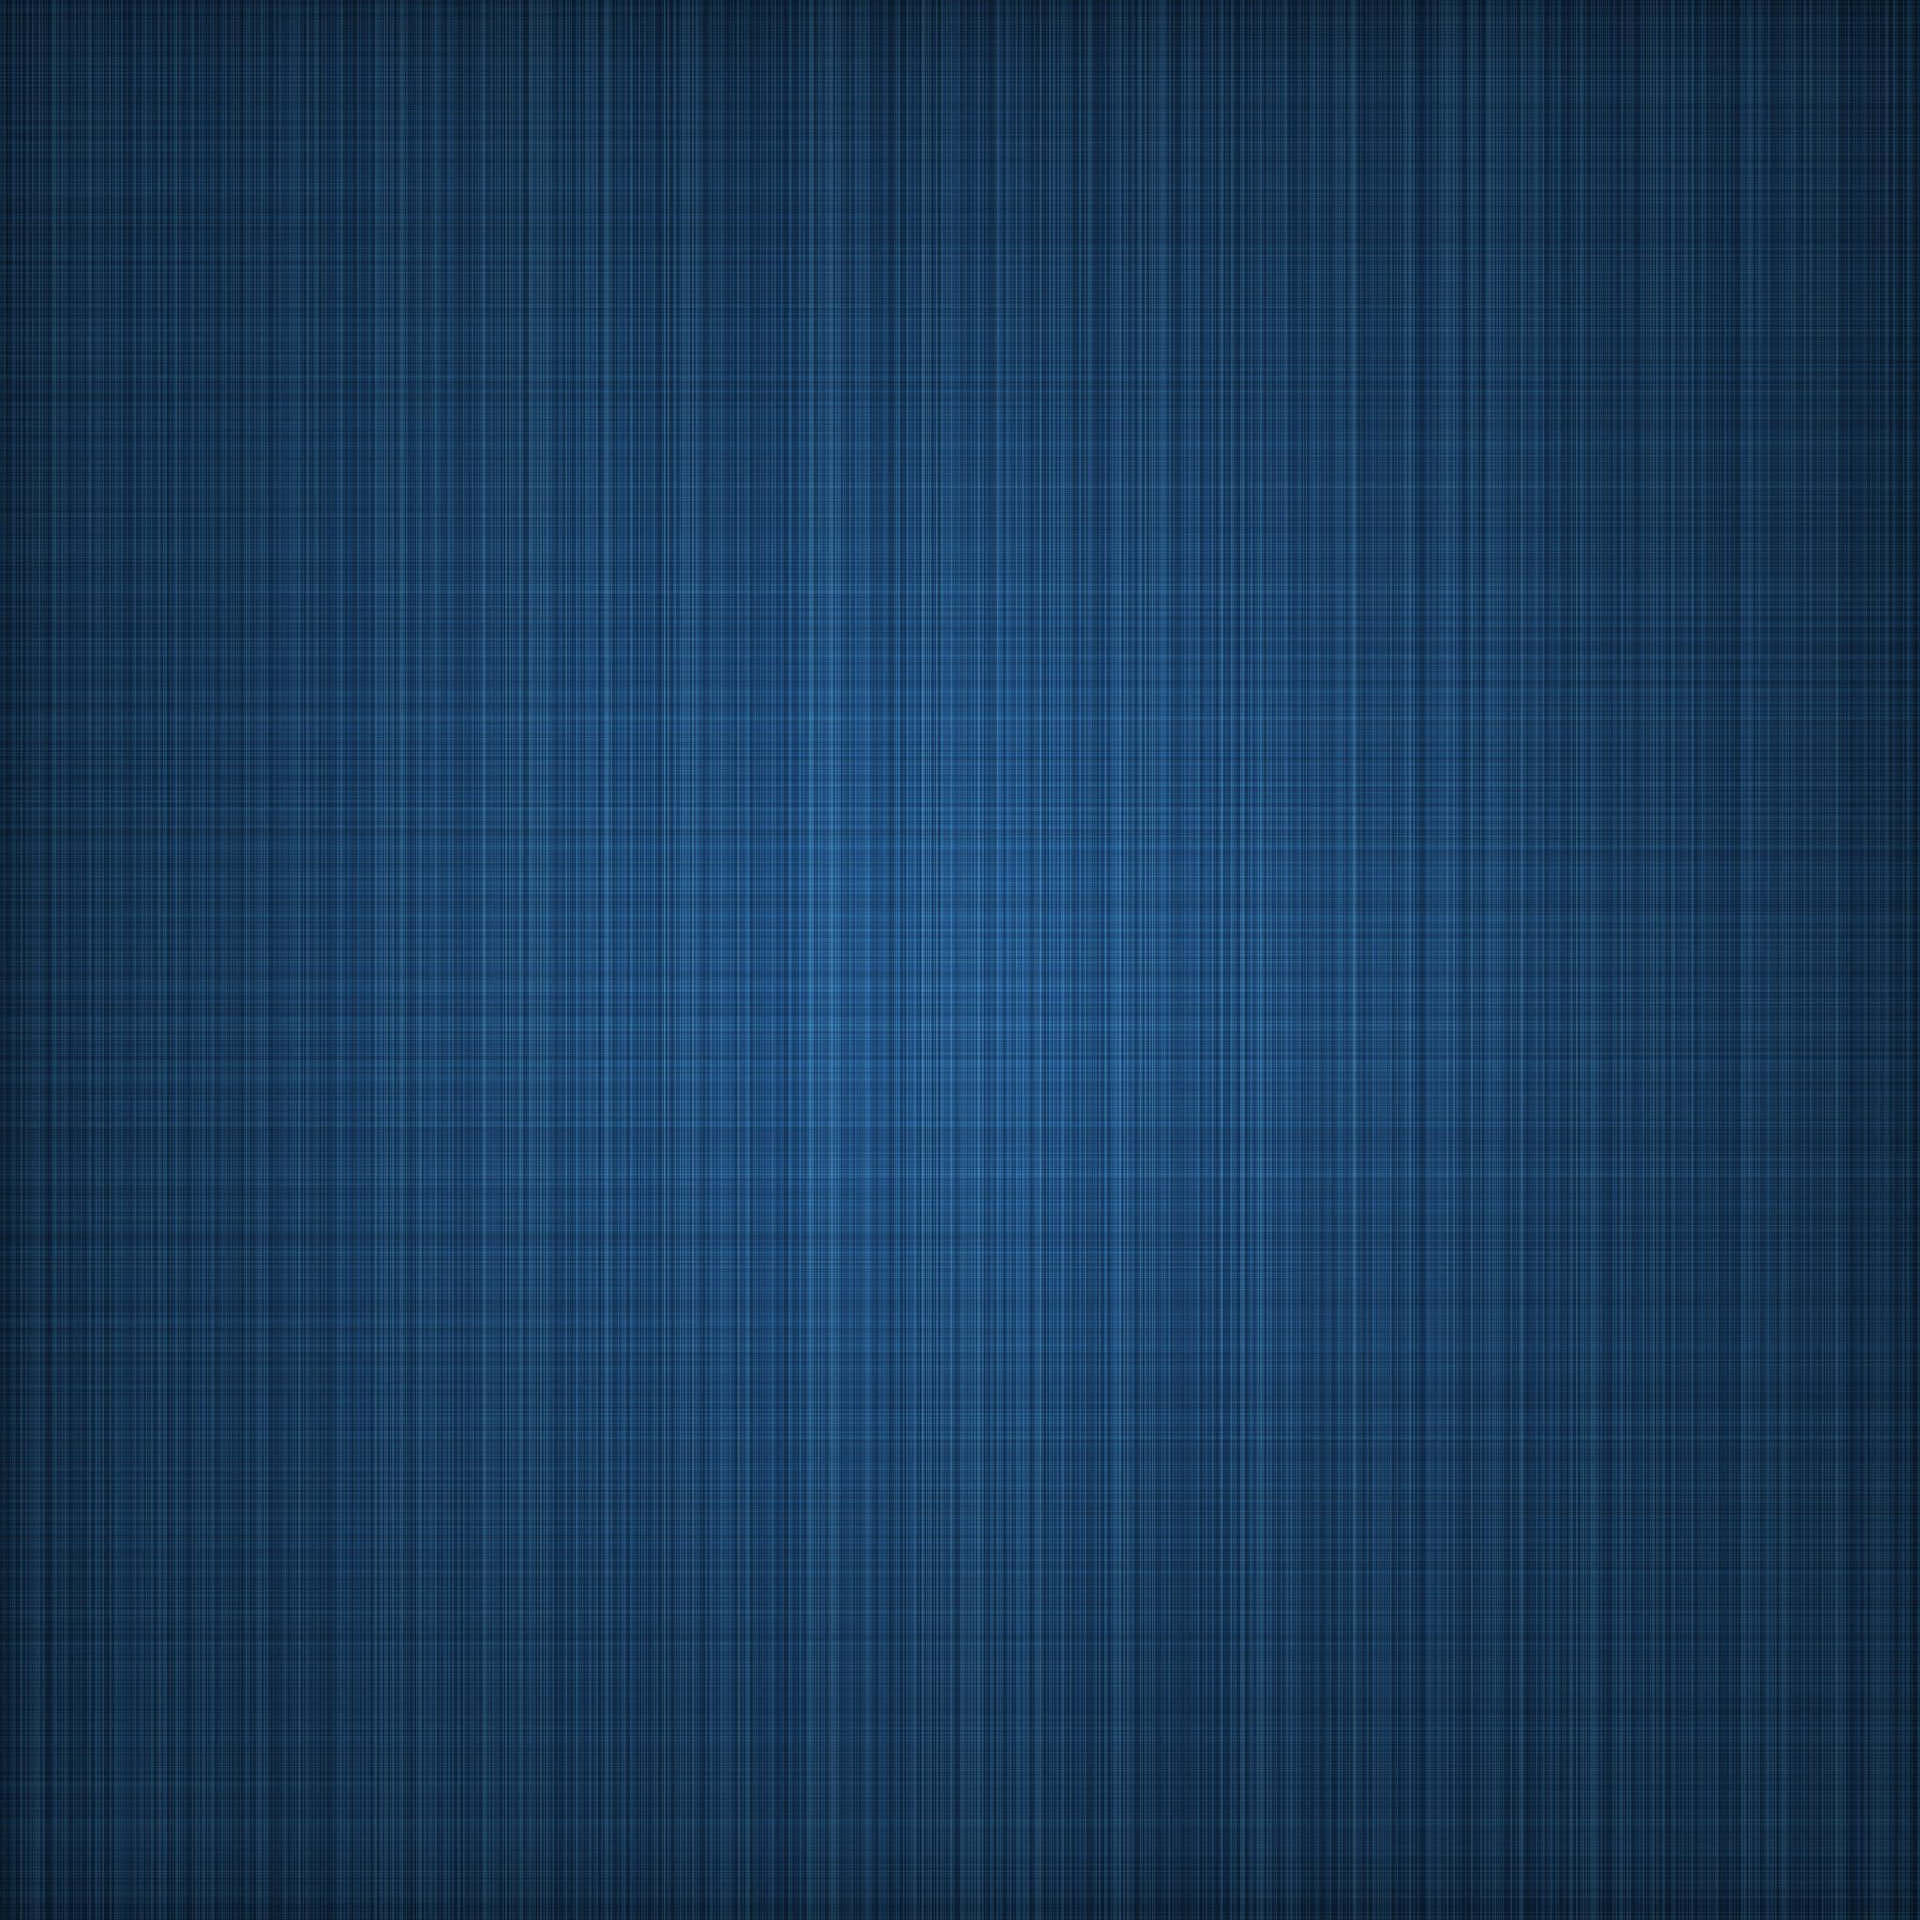 Einblauer Hintergrund Mit Einem Gittermuster. Wallpaper